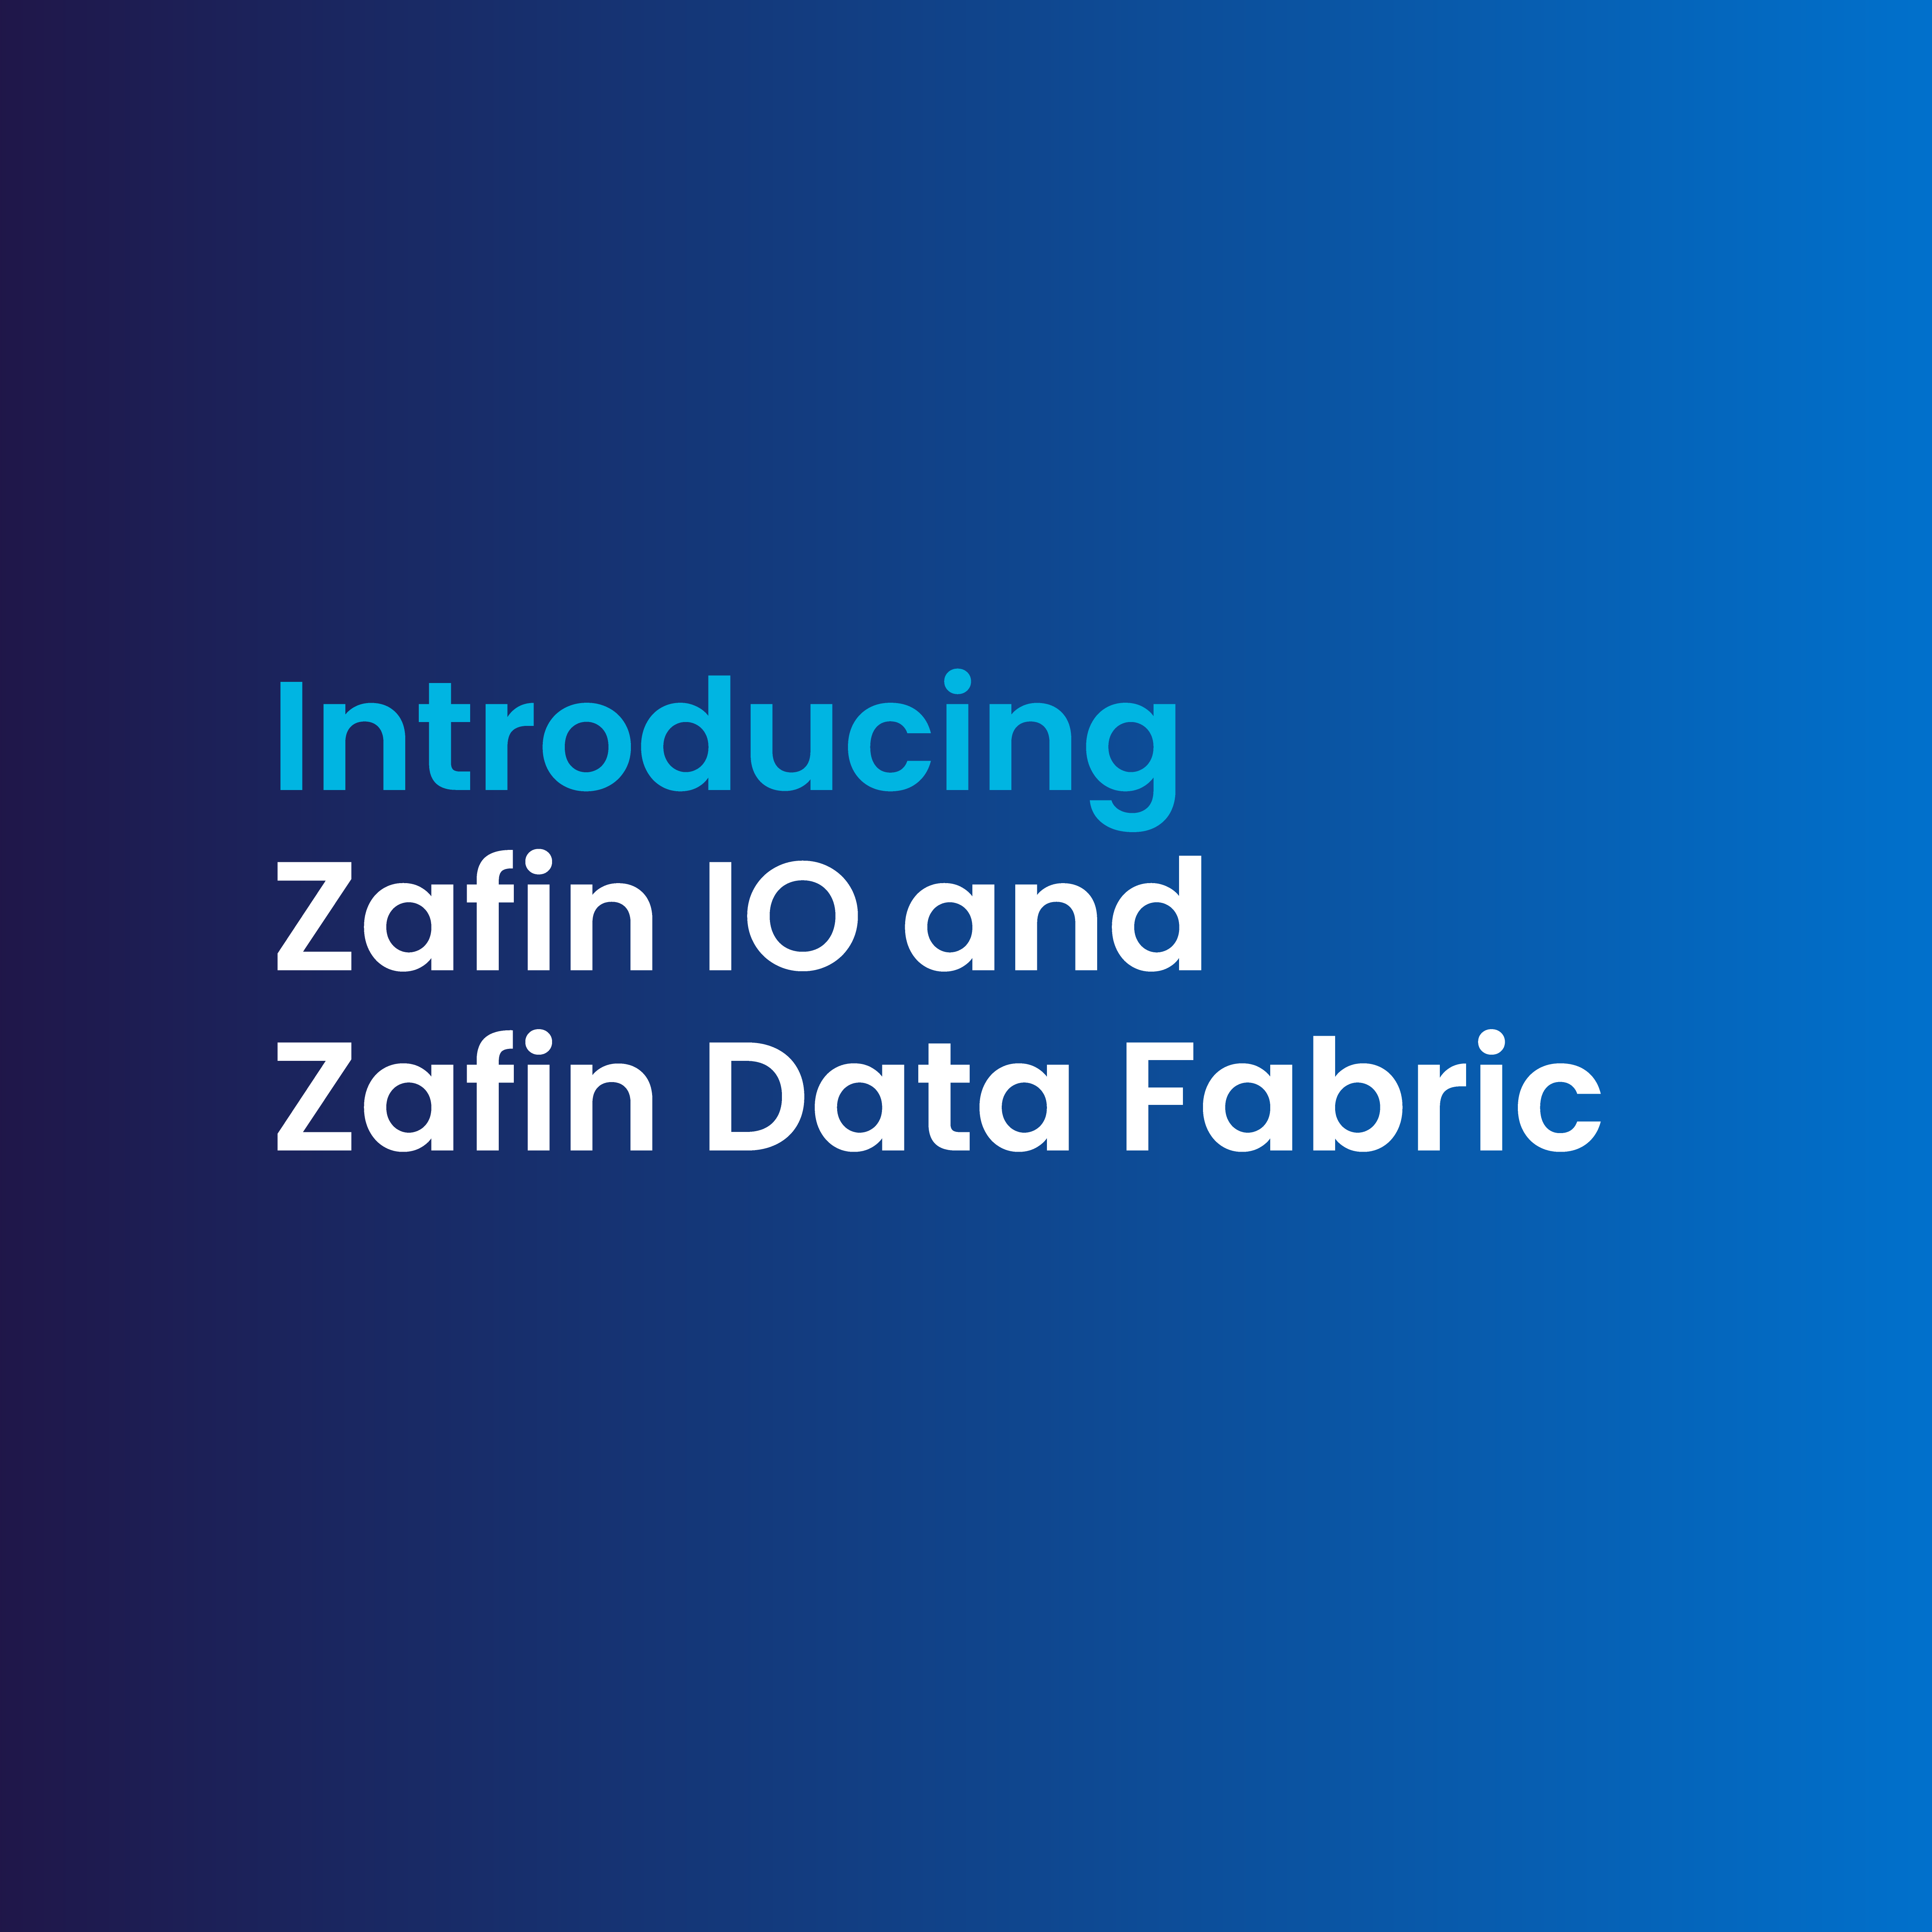 Zafin IO and Zafin Data Fabric